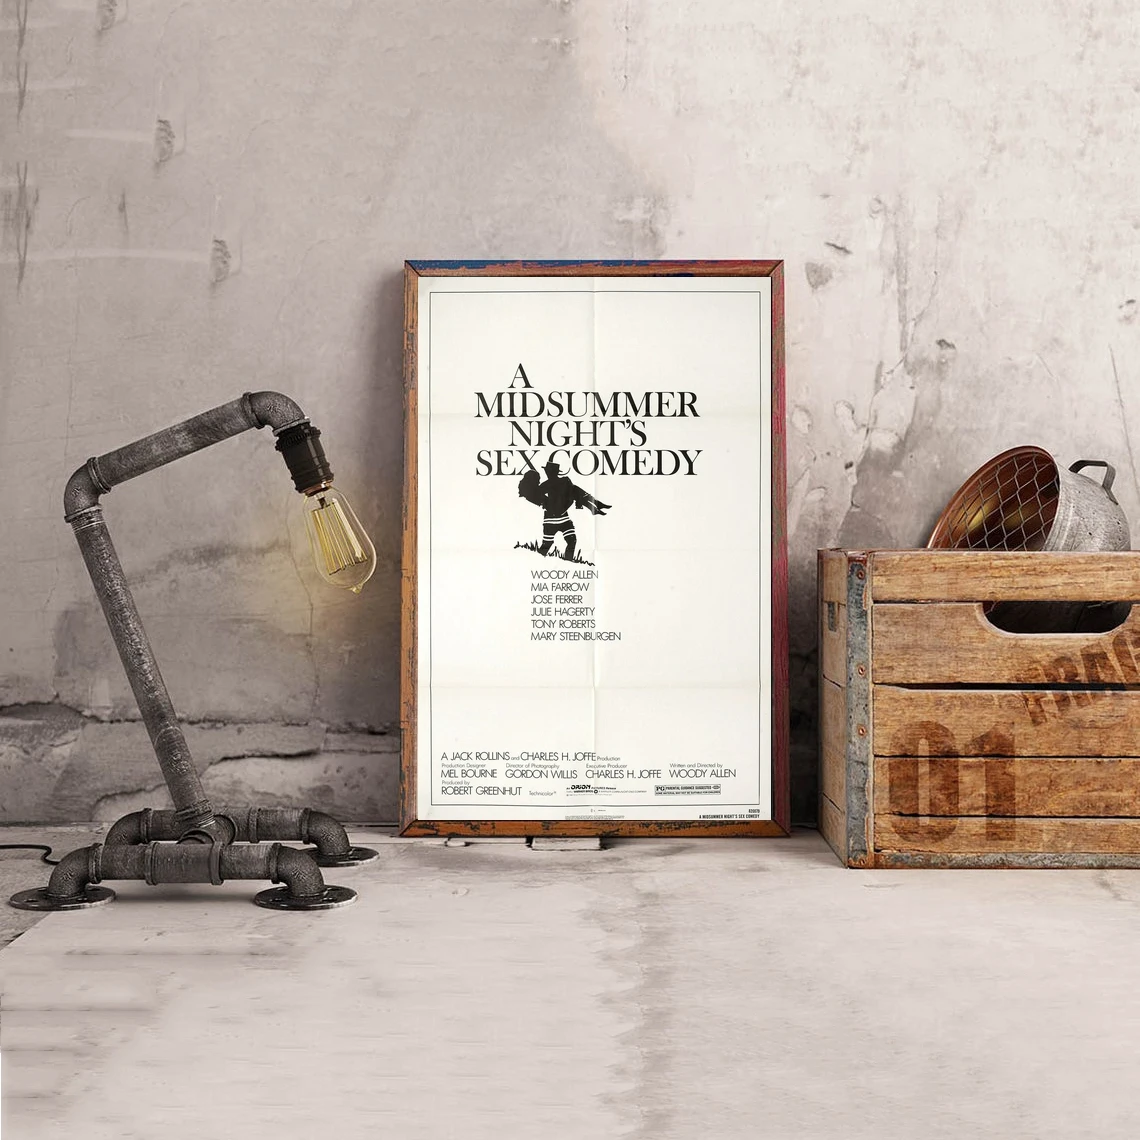 

A Midsummer Ночная Сексуальная комедия 1982 плакат из фильма классический винтажный Ретро холст печать художественный плакат настенная живопись украшение для дома